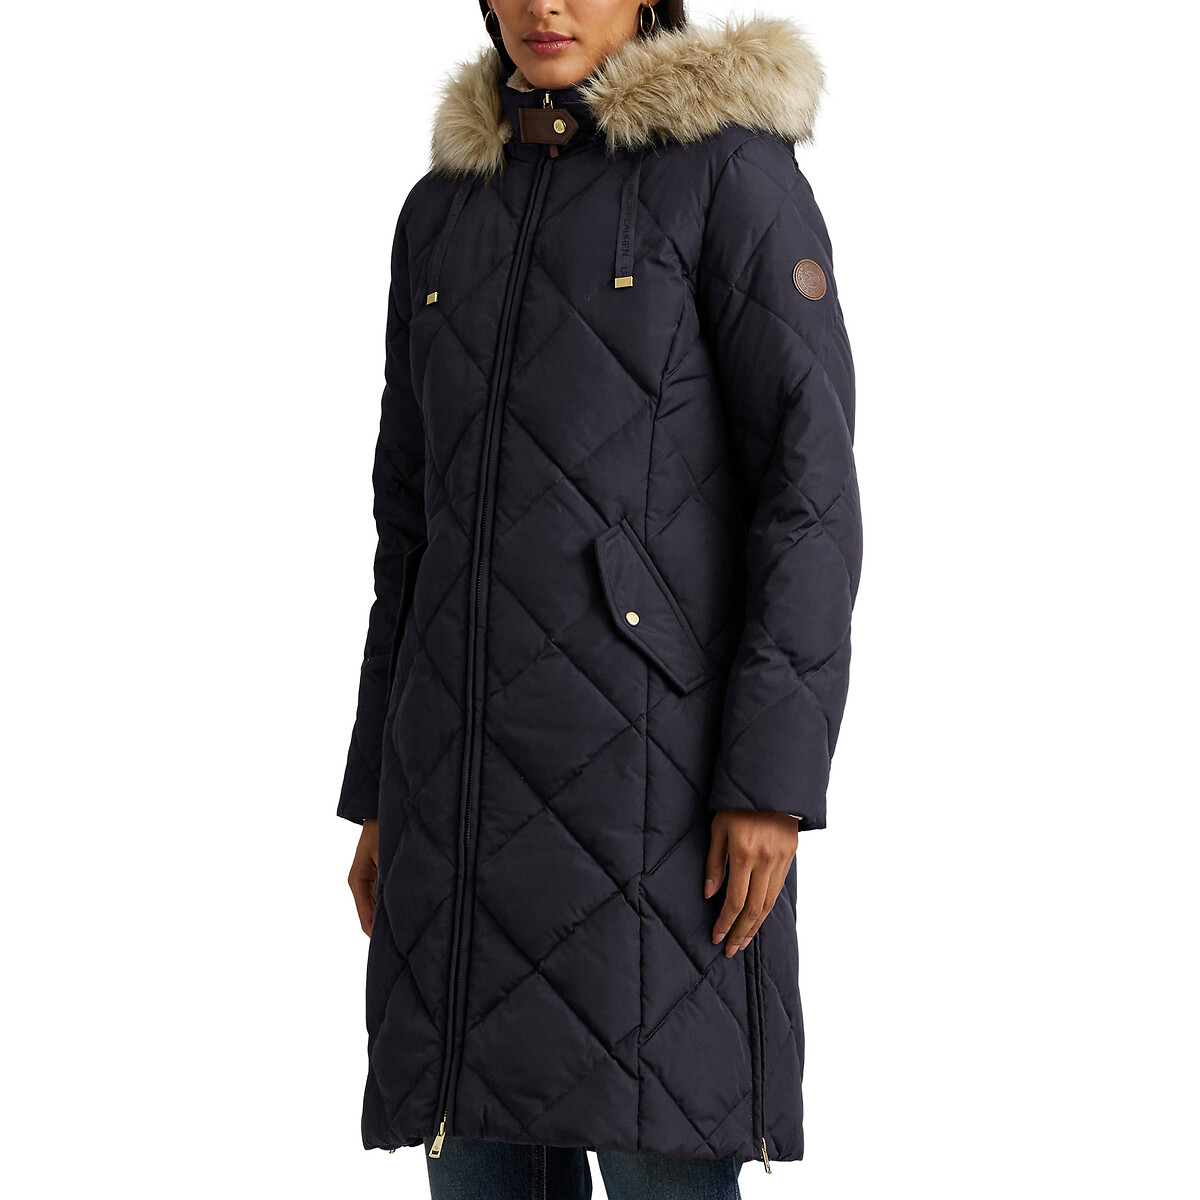 Куртка стеганая средней длины с капюшоном с оторочкой мехом XS синий куртка стеганая средней длины с пришитым капюшоном зимняя l синий